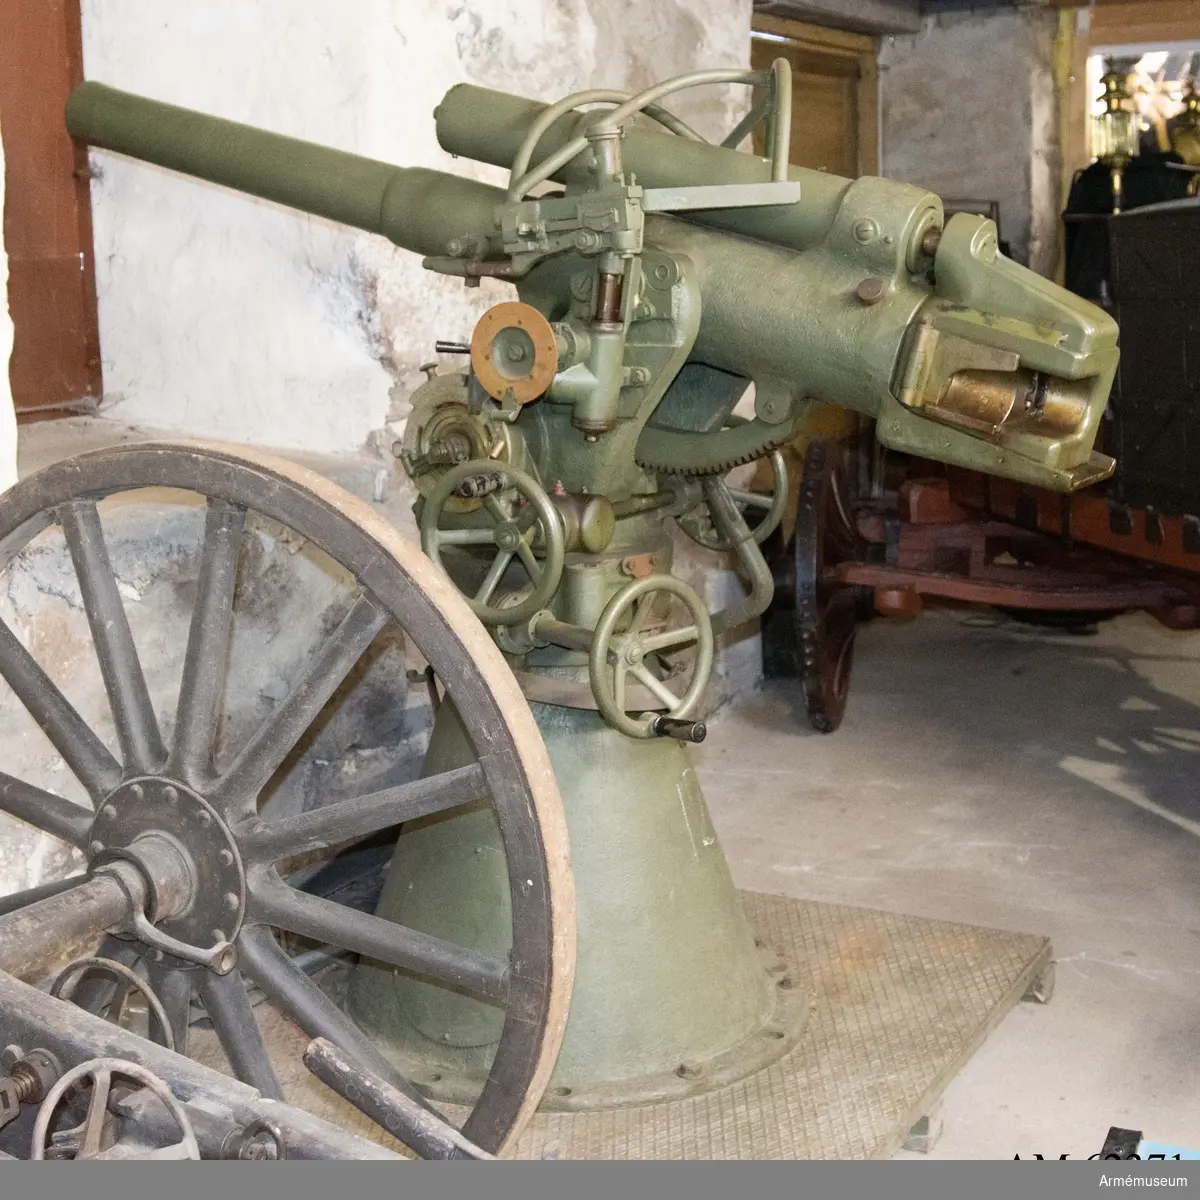 Grupp F I.
7,5 cm kanon m/1900-17 med fast lavett och tillbehör.